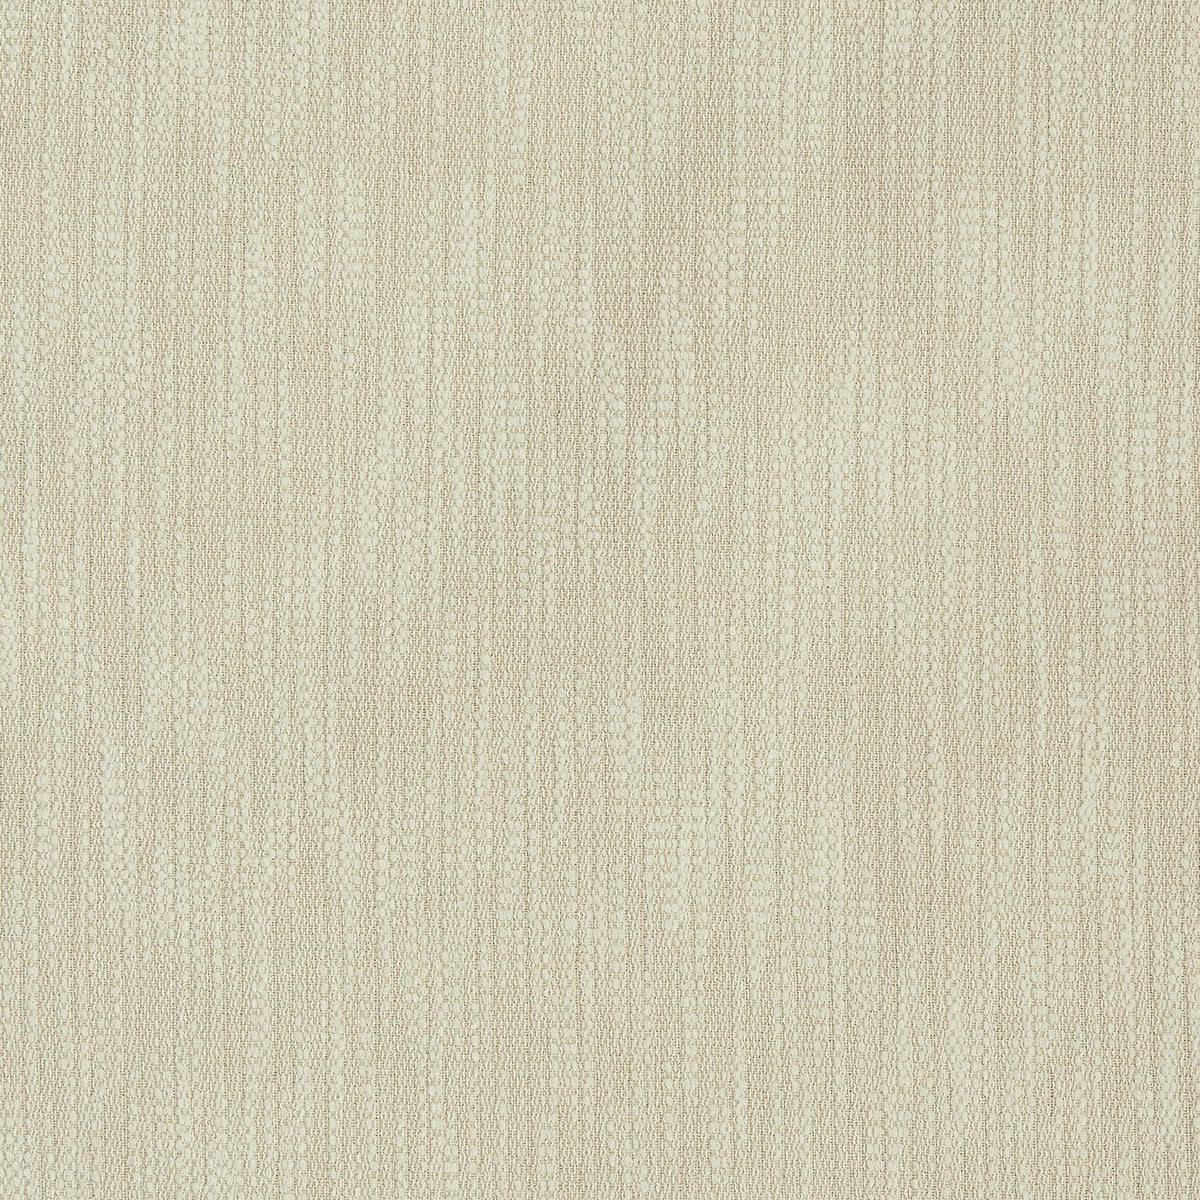 Williamsburg - Cream - Atlanta Fabrics